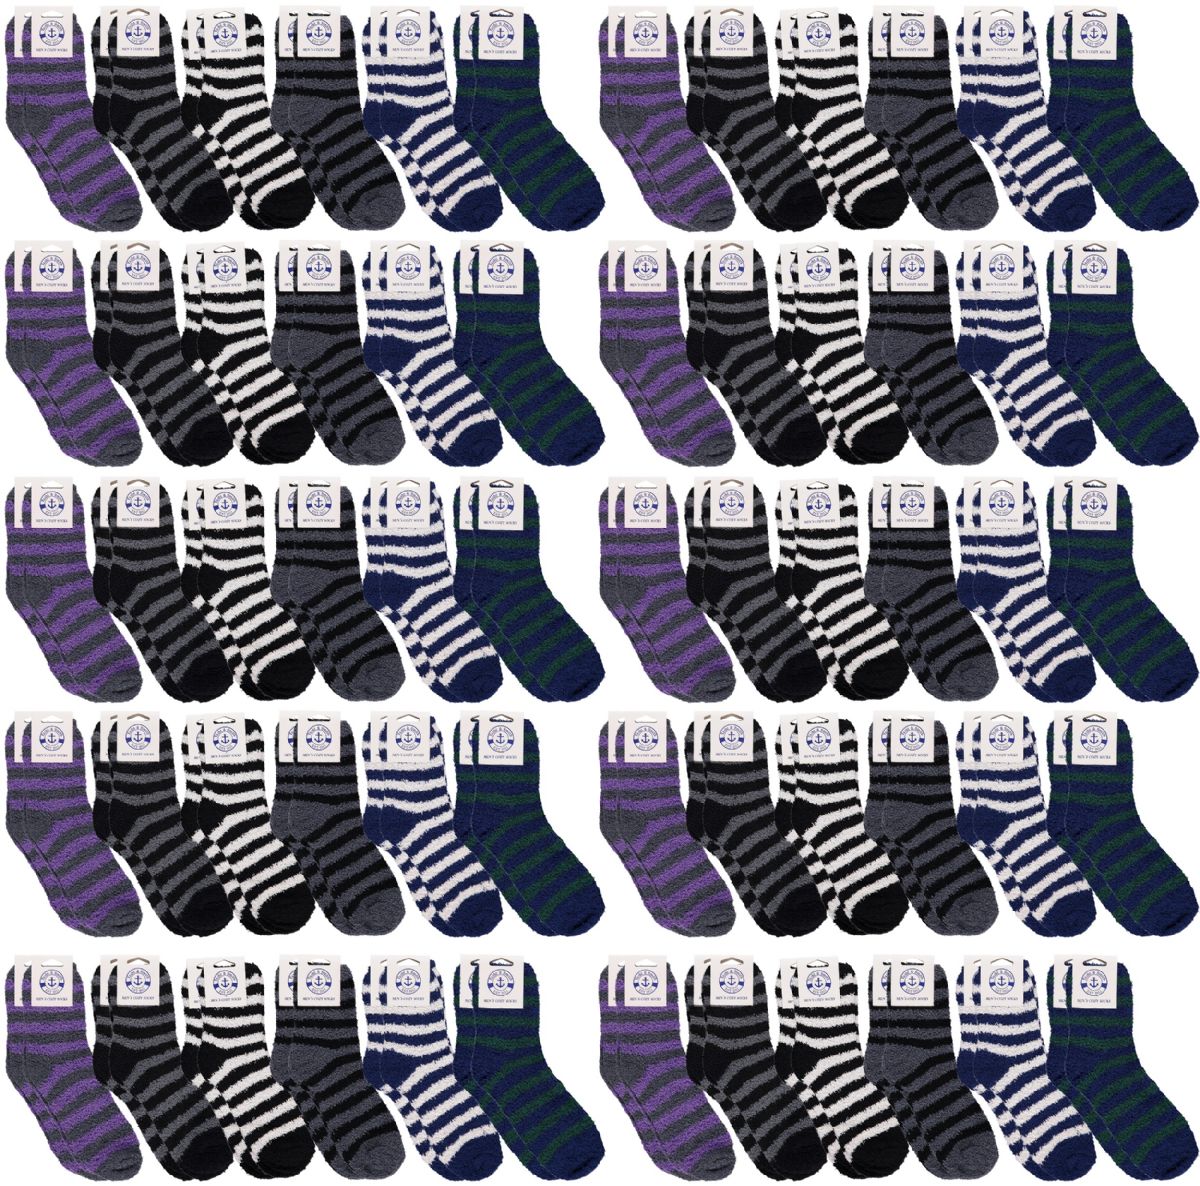 Wholesale Footwear Yacht & Smith Men's Warm Cozy Fuzzy Socks, Stripe Pattern Size 10-13